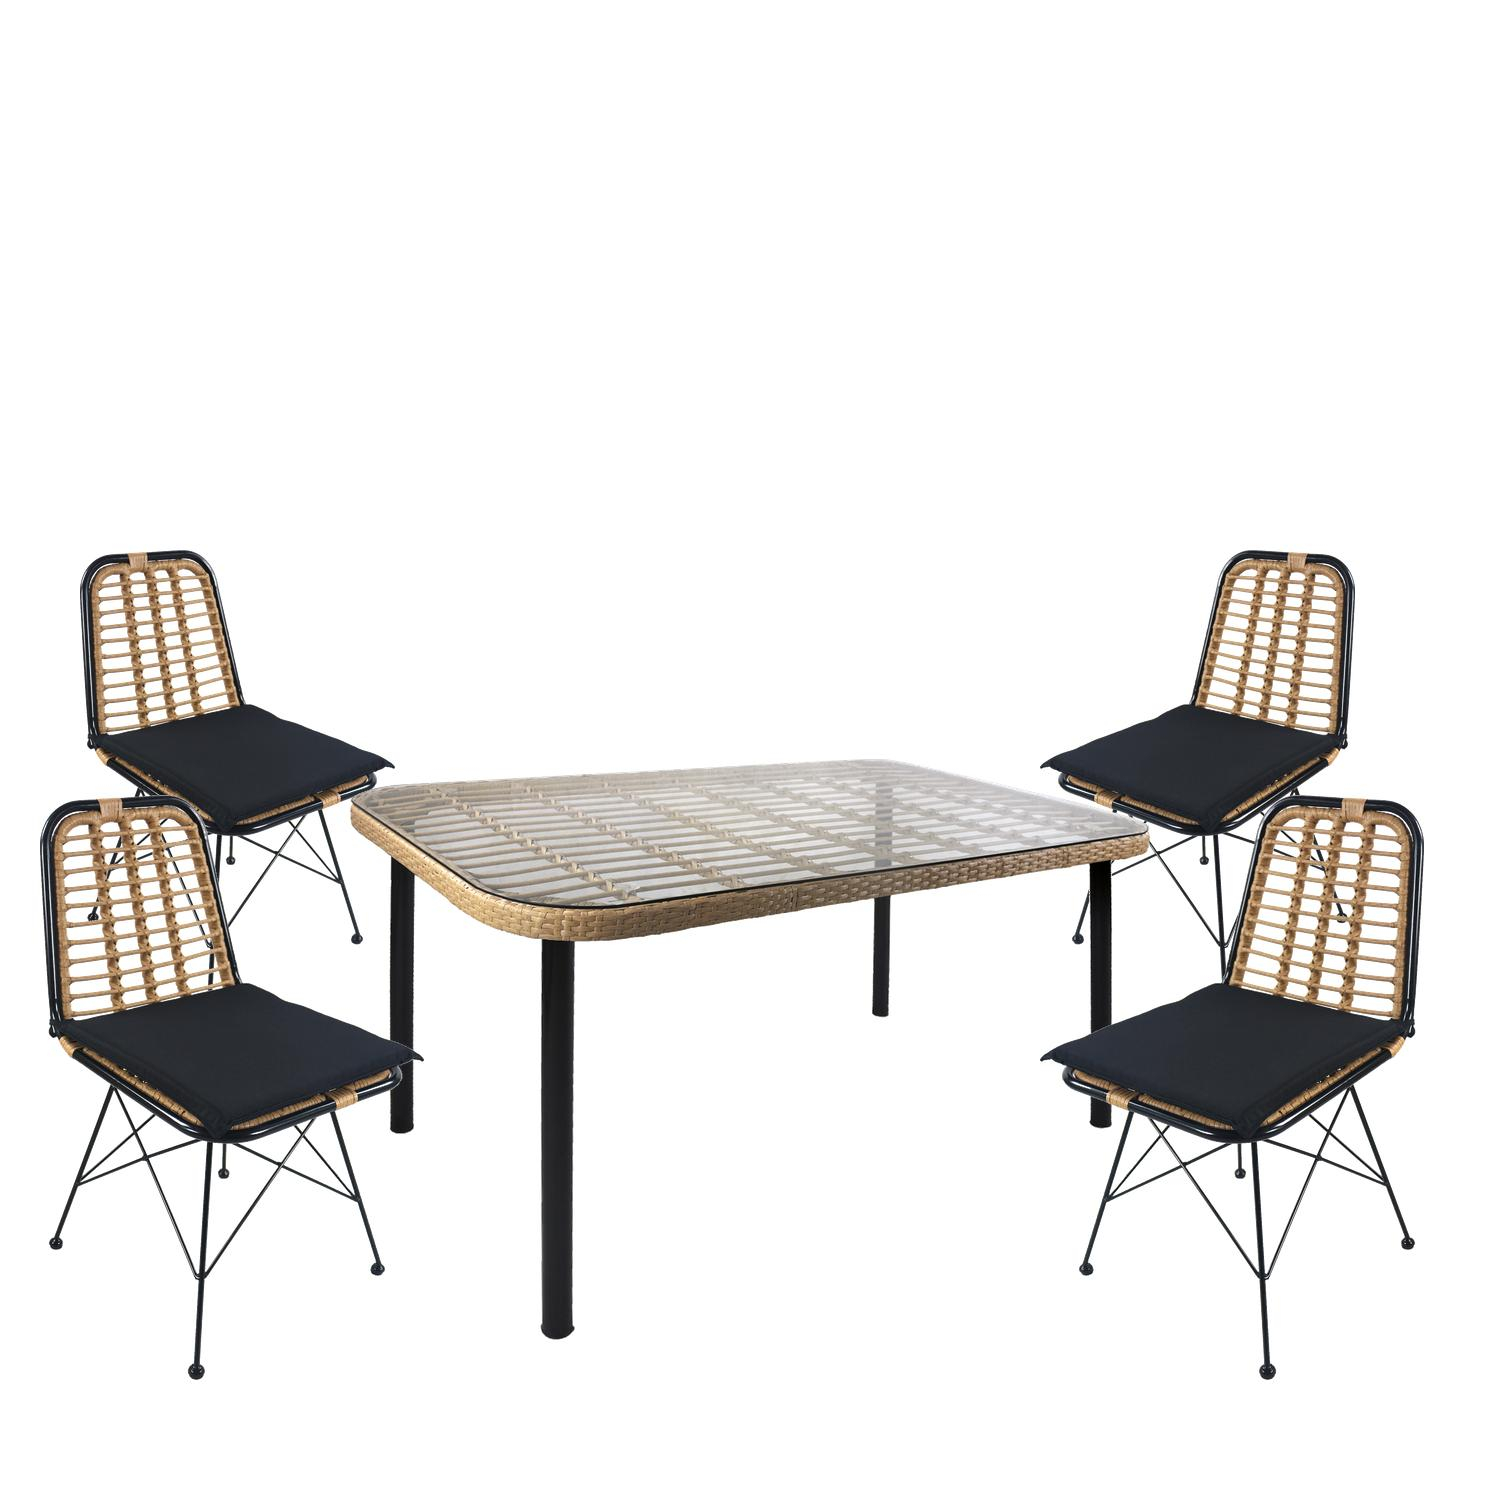 Σετ Τραπεζαρία Κήπου AMPLAS Φυσικό/Μαύρο Μέταλλο/Rattan/Γυαλί Με 4 Καρέκλες 14990300